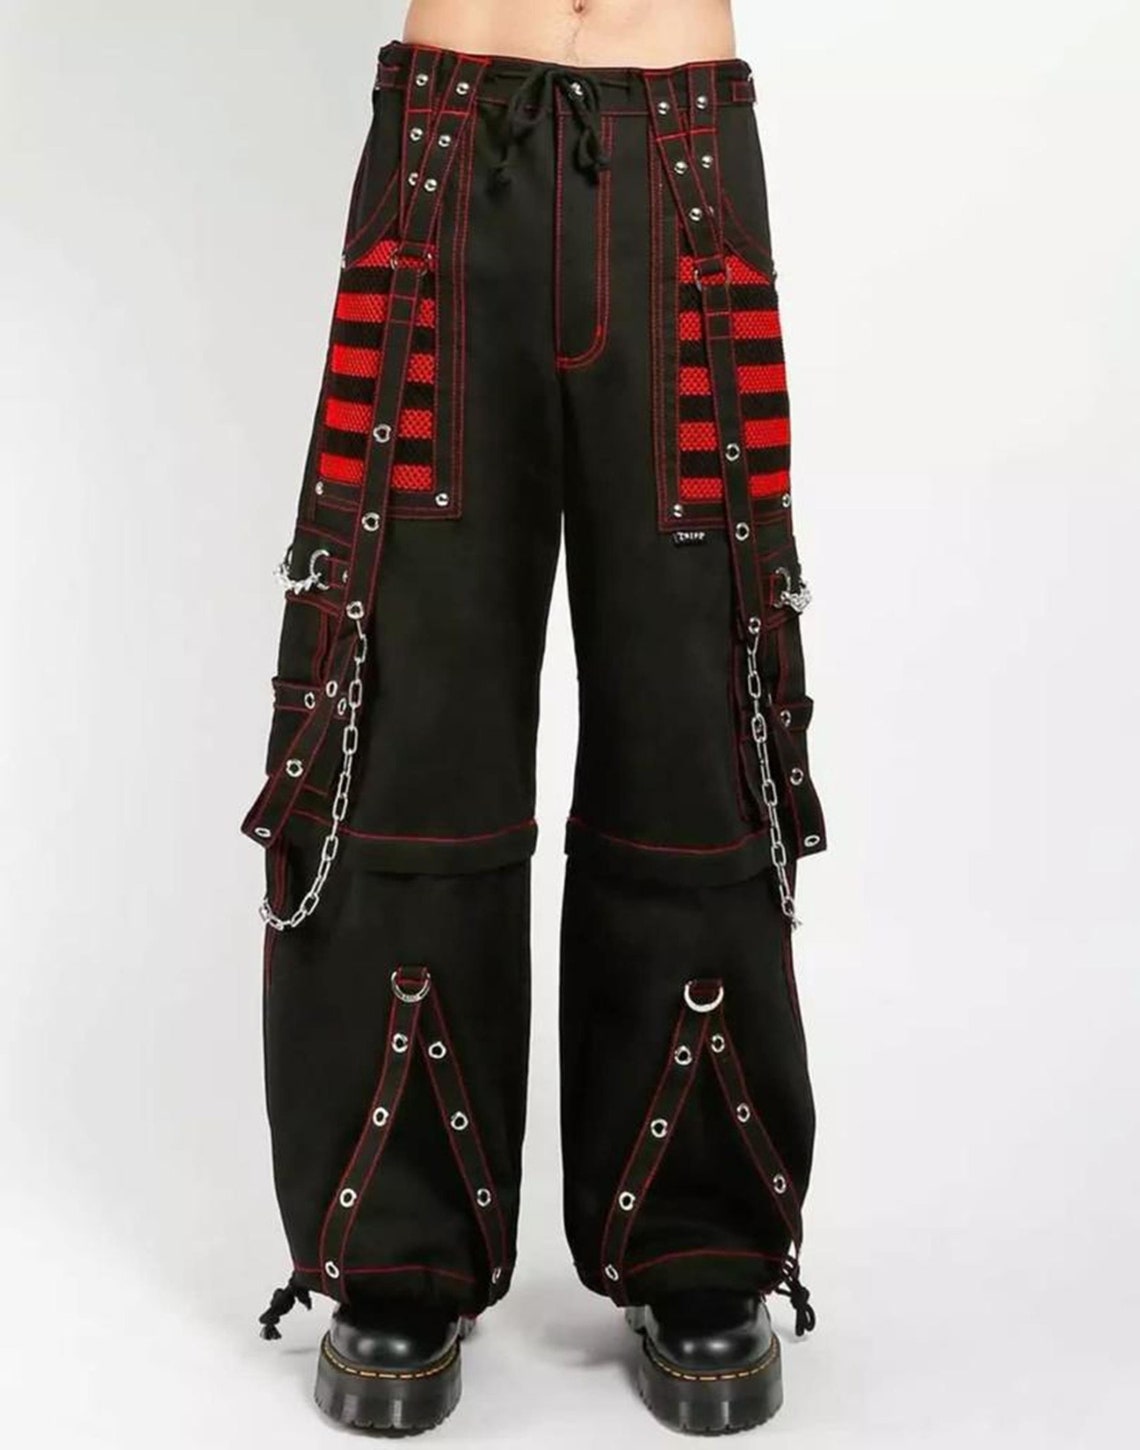 Electro Bondage Rave Men Gothic Cyber Chain Goth Jeans Punk Rock Pant Trouser & Short